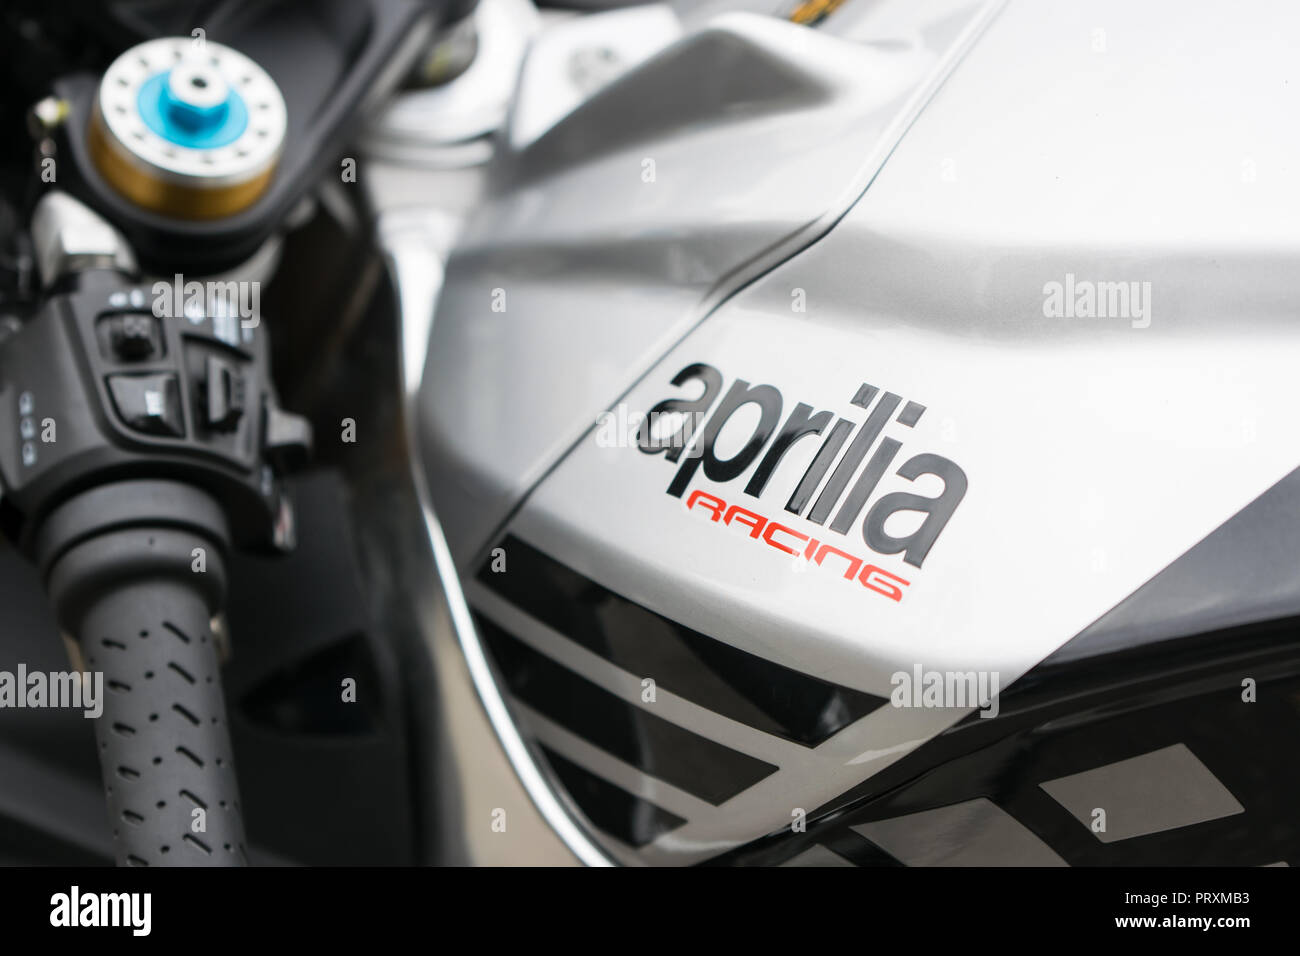 Vue de côté pour Aprilia RSV4 moto, se concentrer sur l'argent avec le logo de la société bak Banque D'Images